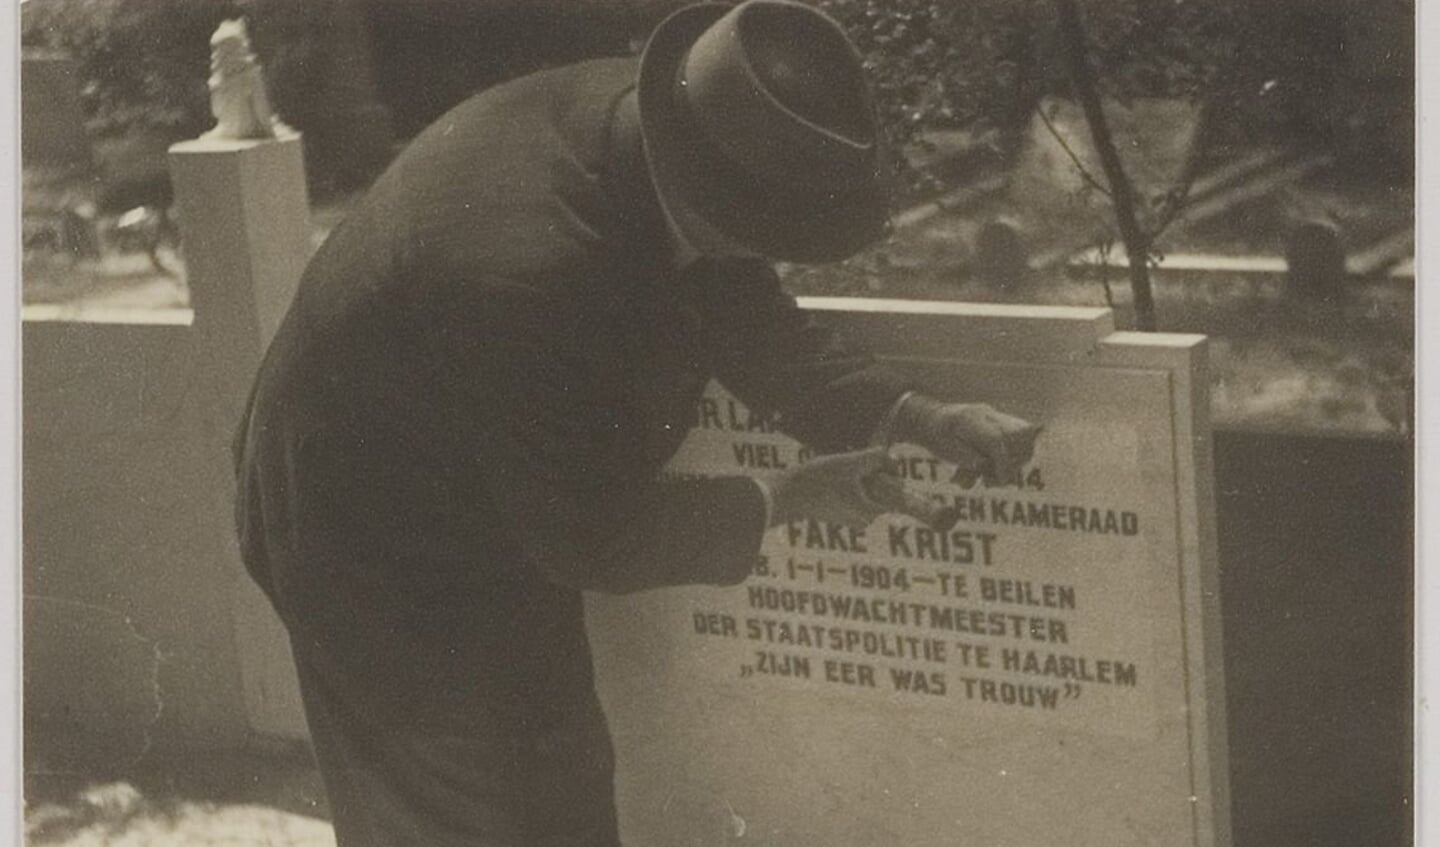 Verwijderen van tekst op de grafsteen van Fake Krist, na de oorlog. 